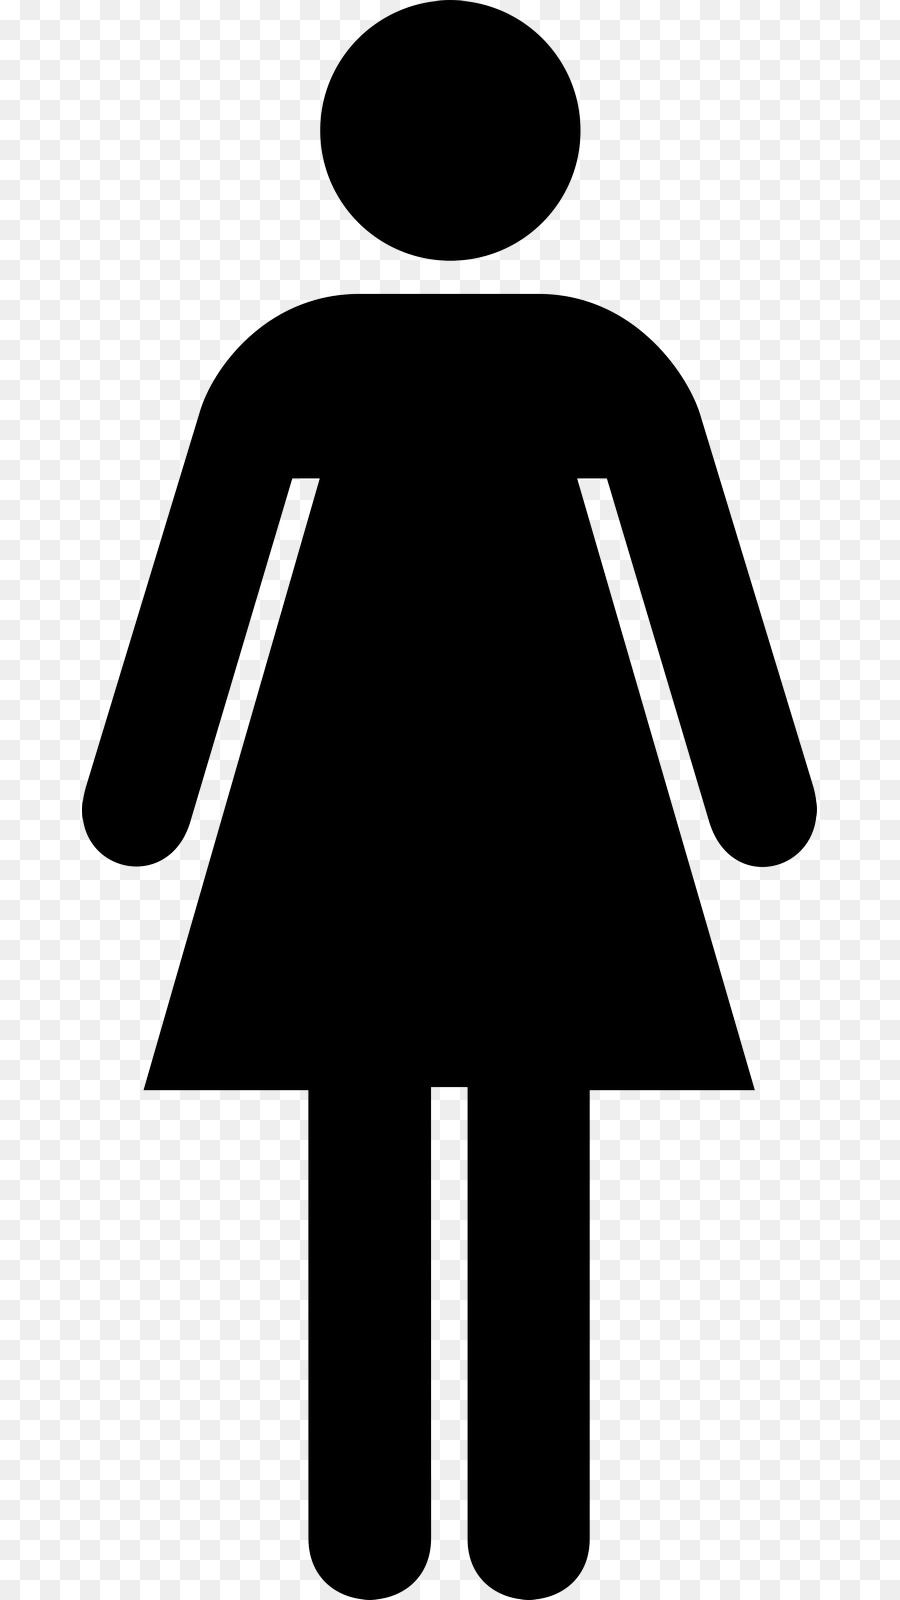 Unisex public toilet Bathroom Ladies Rest Room - toilet png download - 735*1600 - Free Transparent Public Toilet png Download.